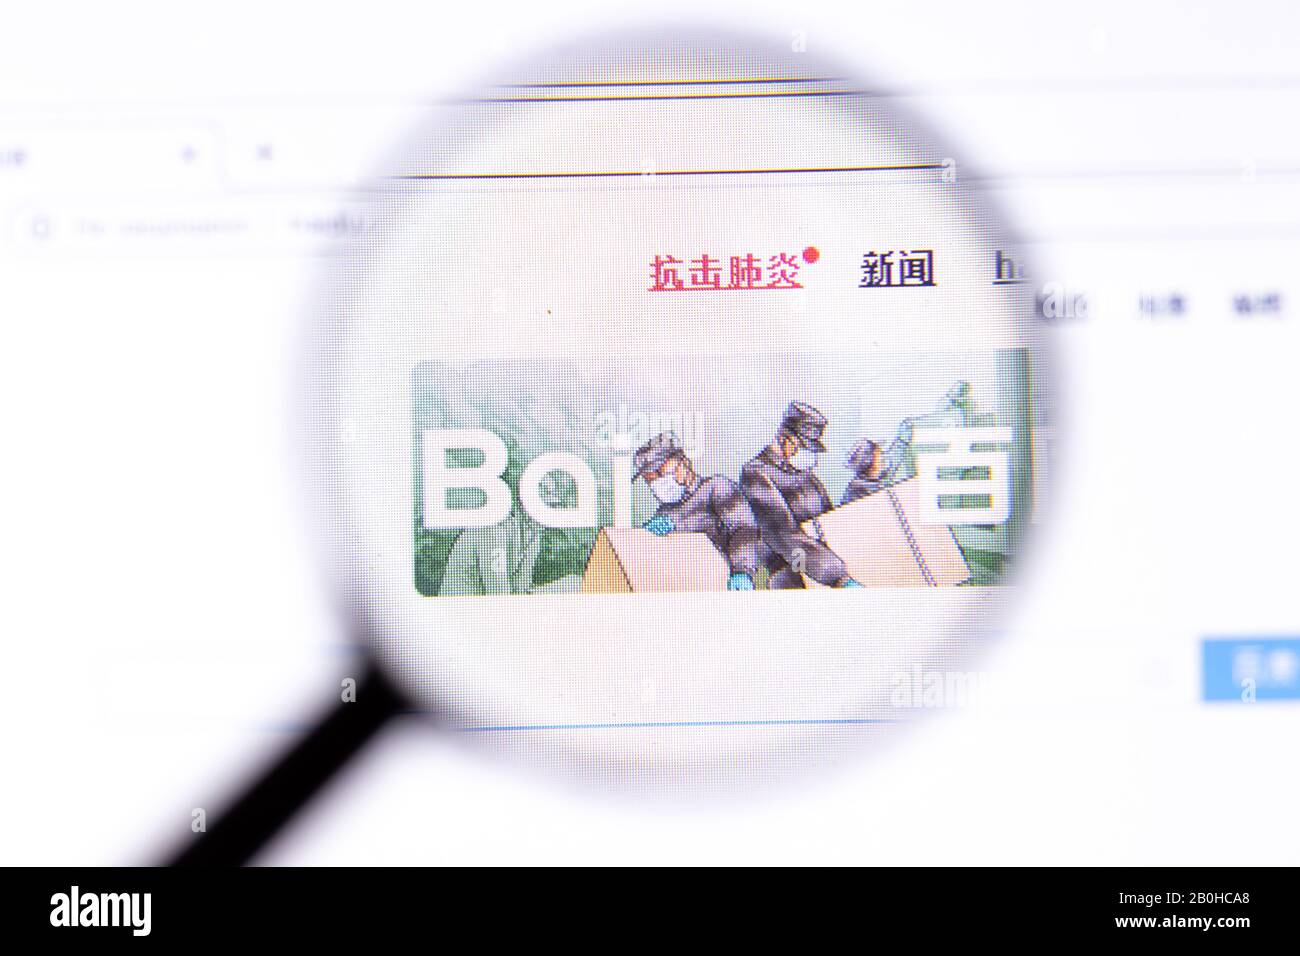 Los Angeles, Californie, États-Unis - 18.02.2020: Page du site Baidu avec logo de gros plan. baidu.com icône du site à l'écran, éditorial illustratif Banque D'Images